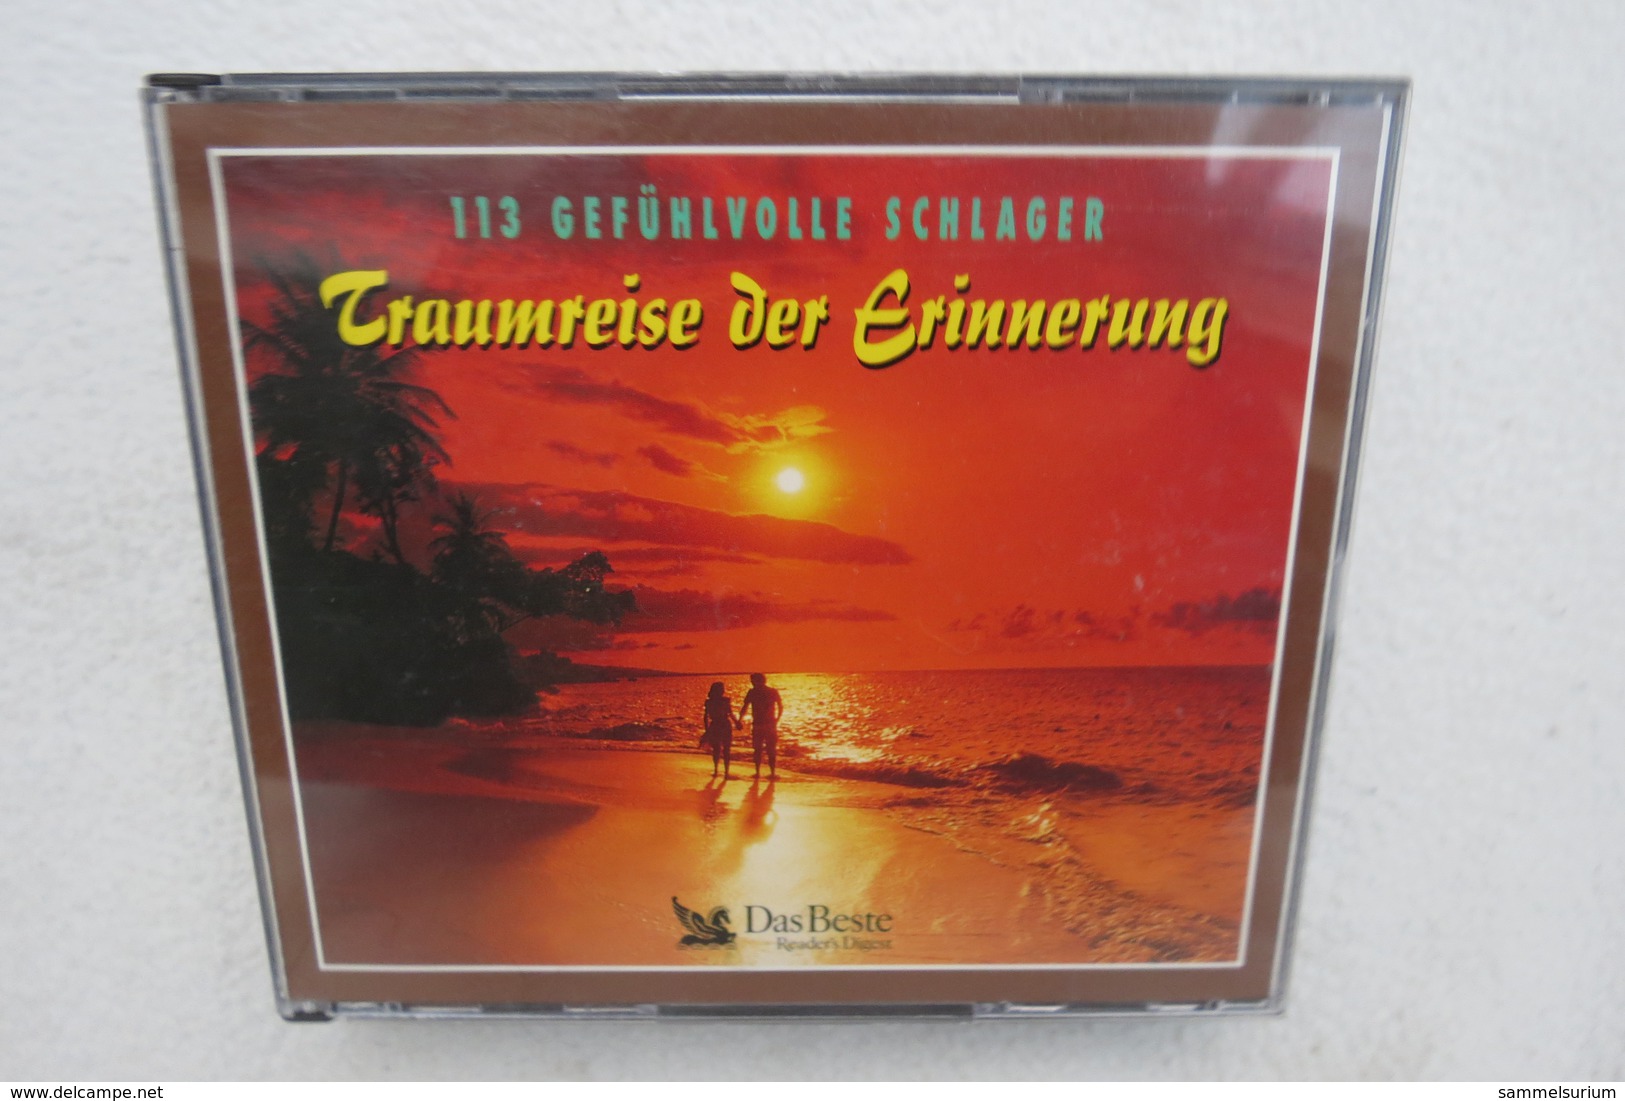 3 CDs "Traumreise Der Erinnerung" 113 Gefühlvolle Schlager - Sonstige - Deutsche Musik